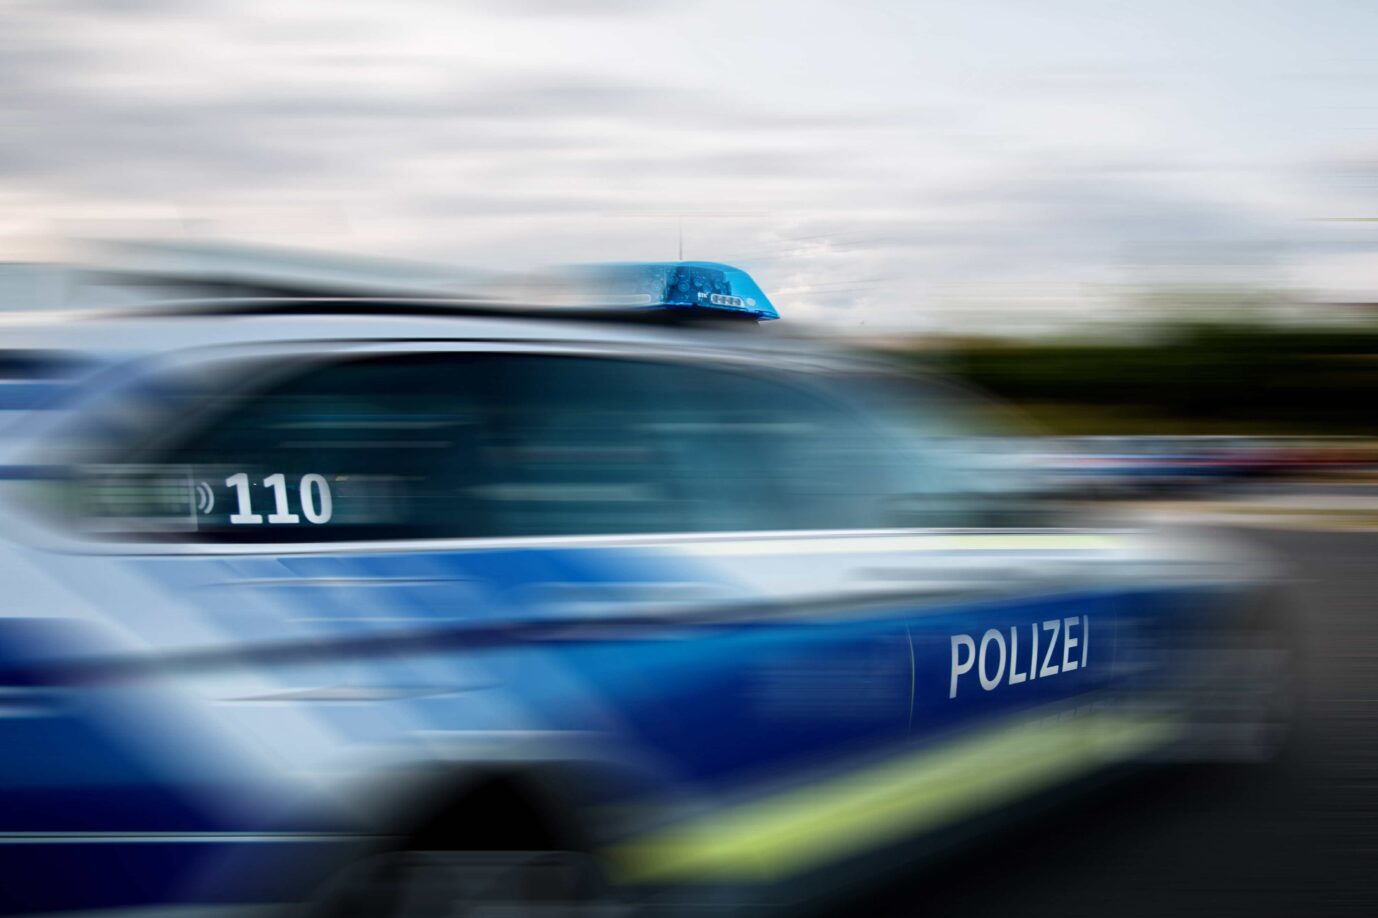 Vergewaltigung einer demenzkranken Frau durch zwei Ausländer: Polizeieinsatz in Ingolstadt.